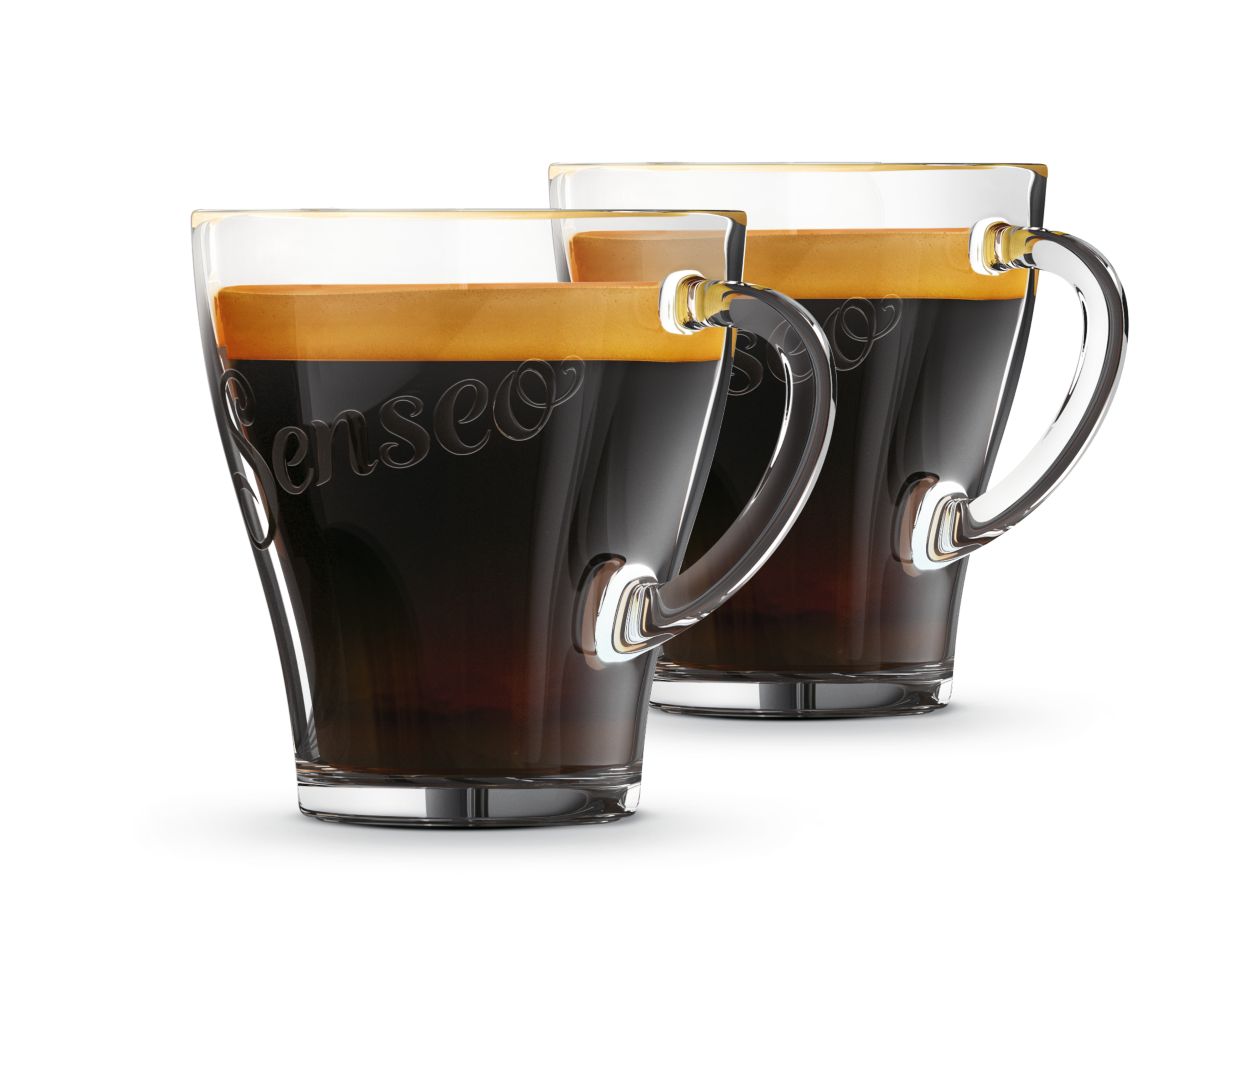 verbanning Beschuldiging Met bloed bevlekt Glazen koffiekopjes CA6510/00 | SENSEO®